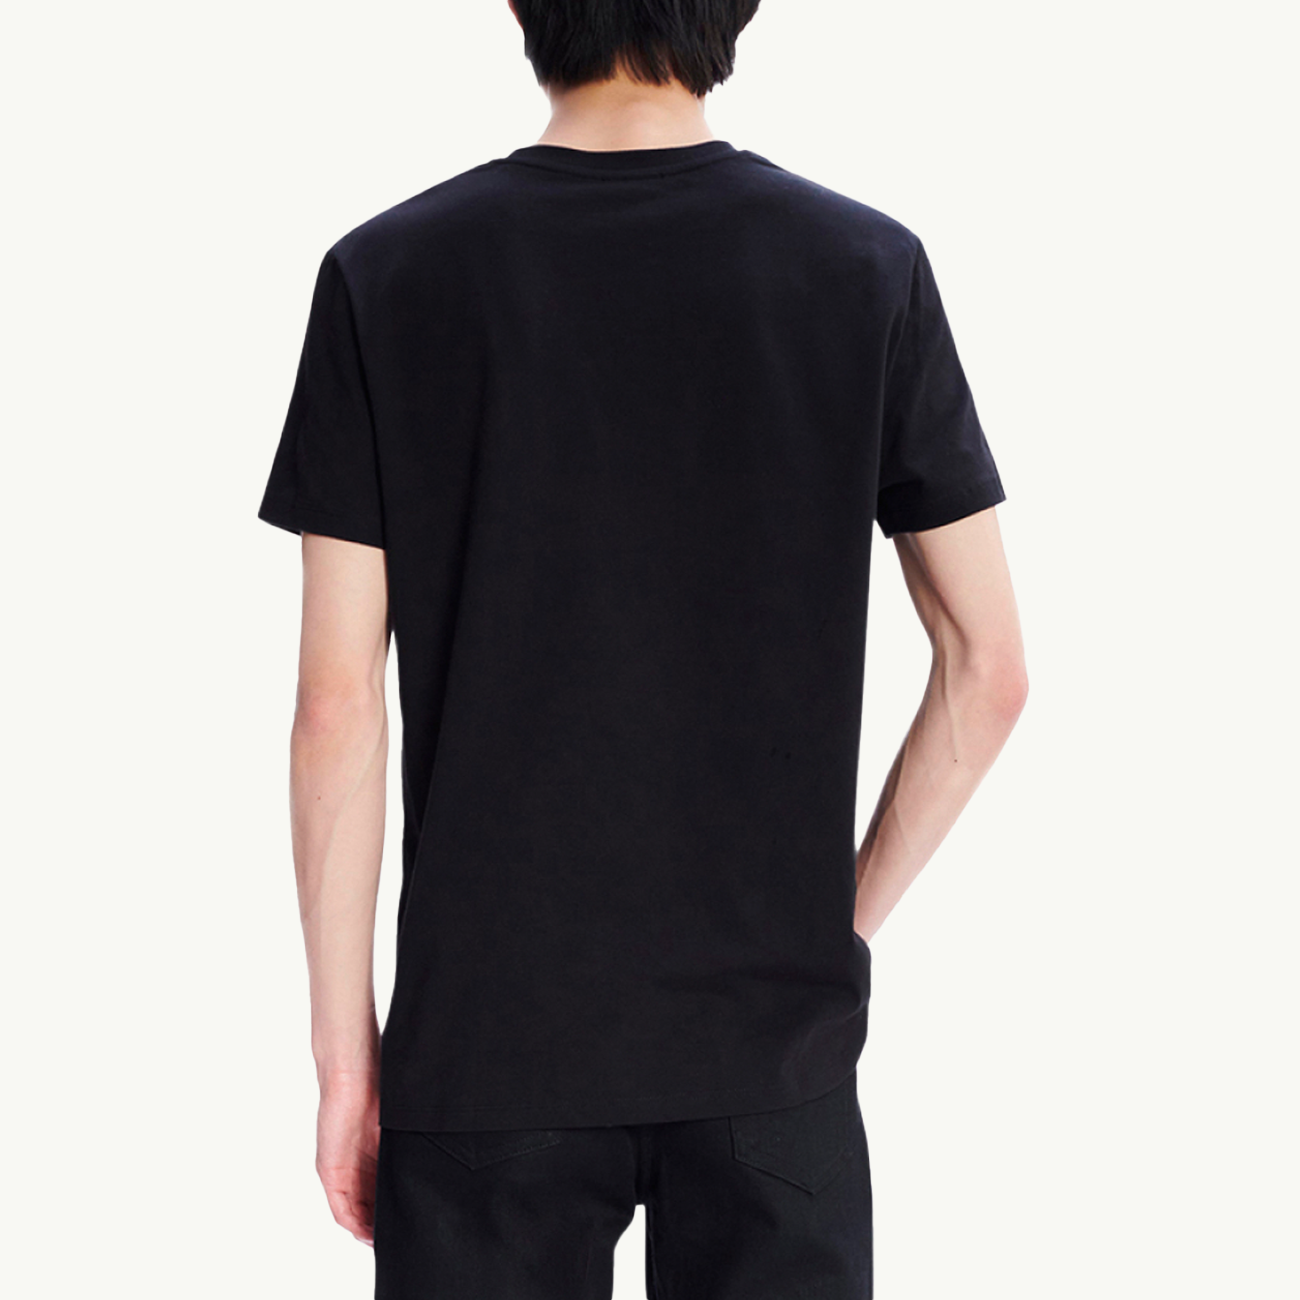 VPC T-Shirt - Black